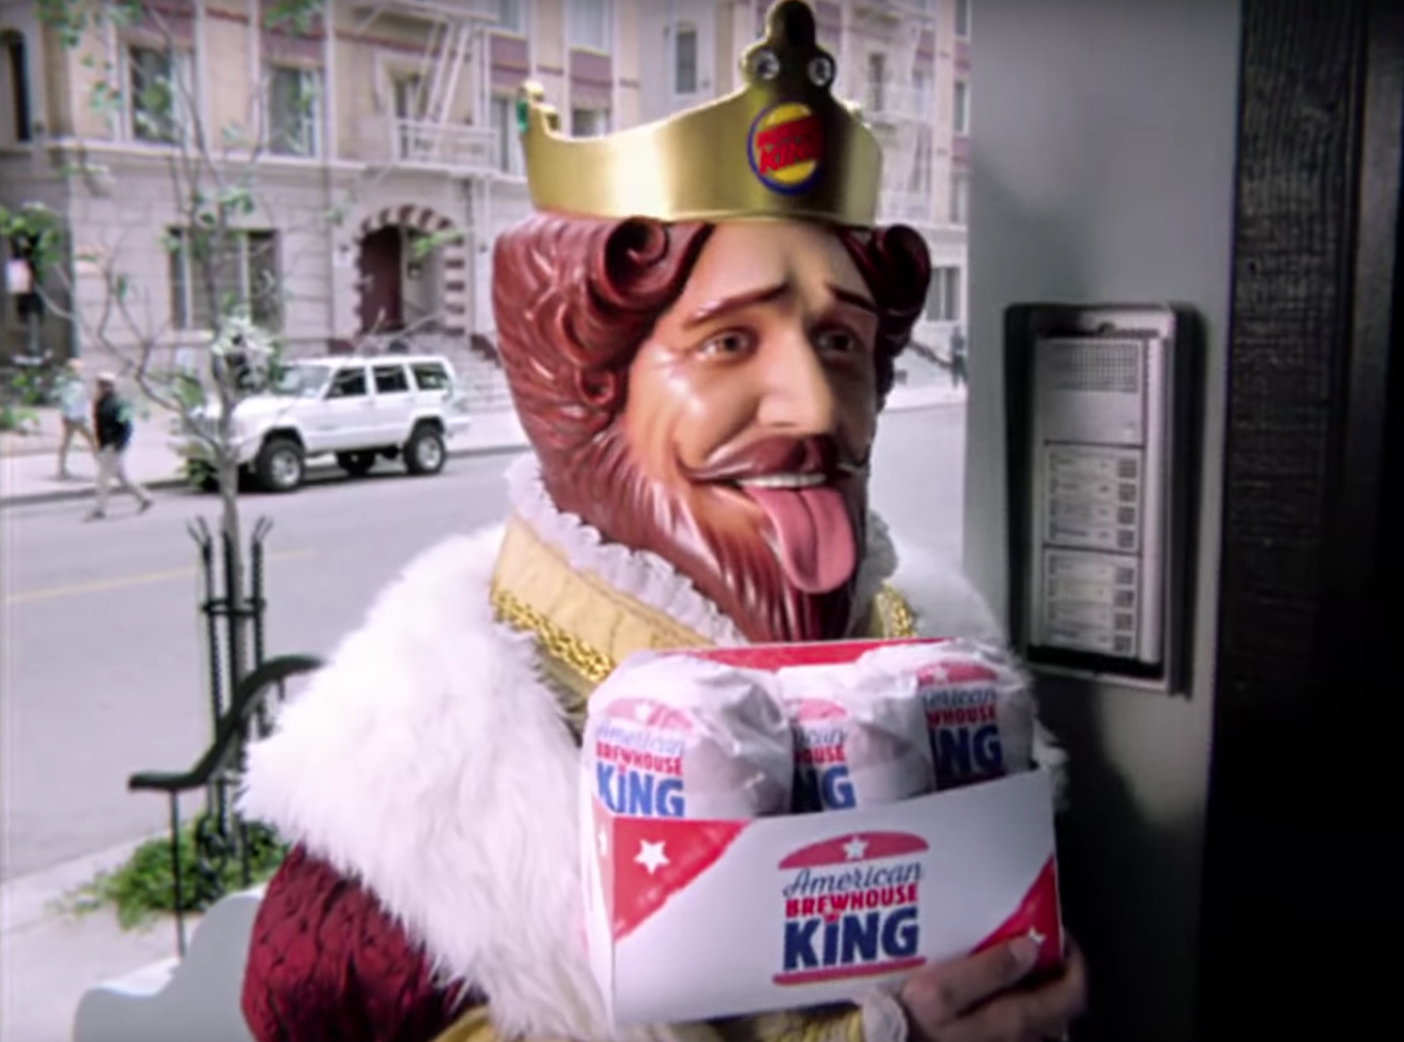 Маскот бургер Кинг. Король бургер Кинг. Бургер Кинг Маскот Король. Старая реклама бургер Кинг с королем.